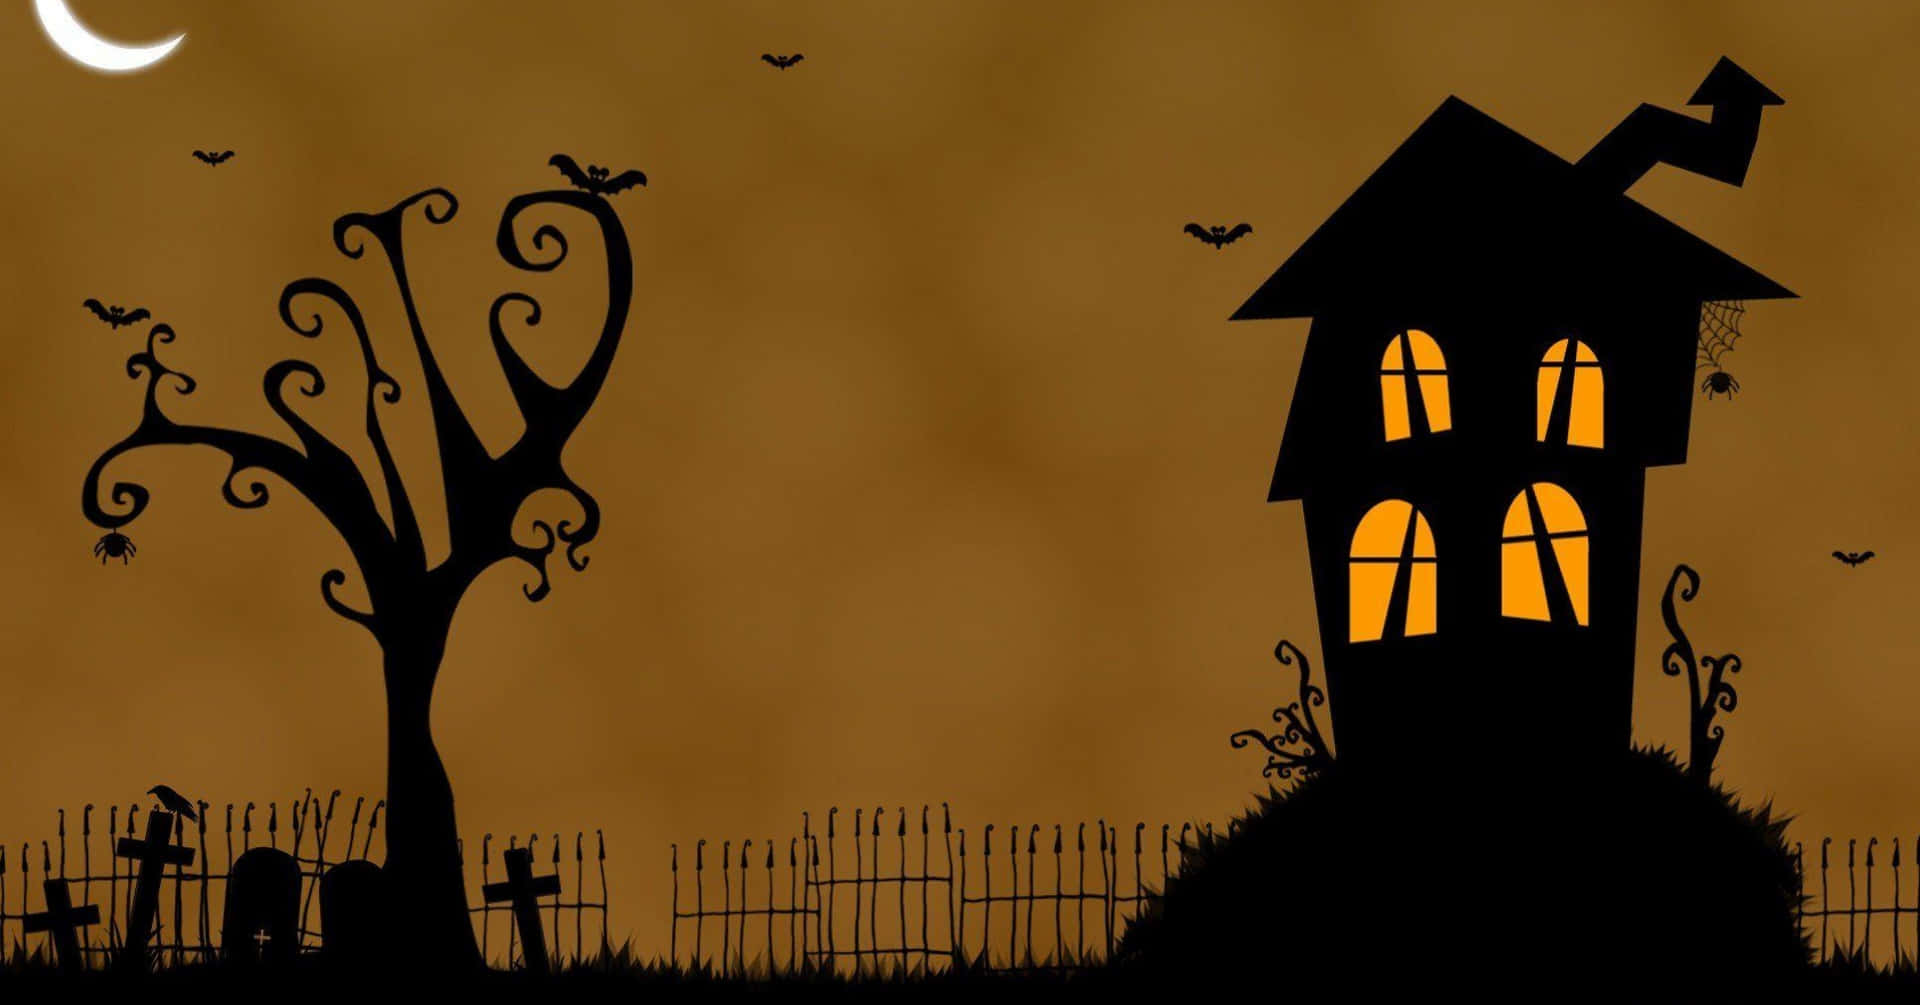 Imagenestética De Halloween De Una Casa Encantada Y Un Árbol En Tono Naranja, Estilo Dibujo Animado.